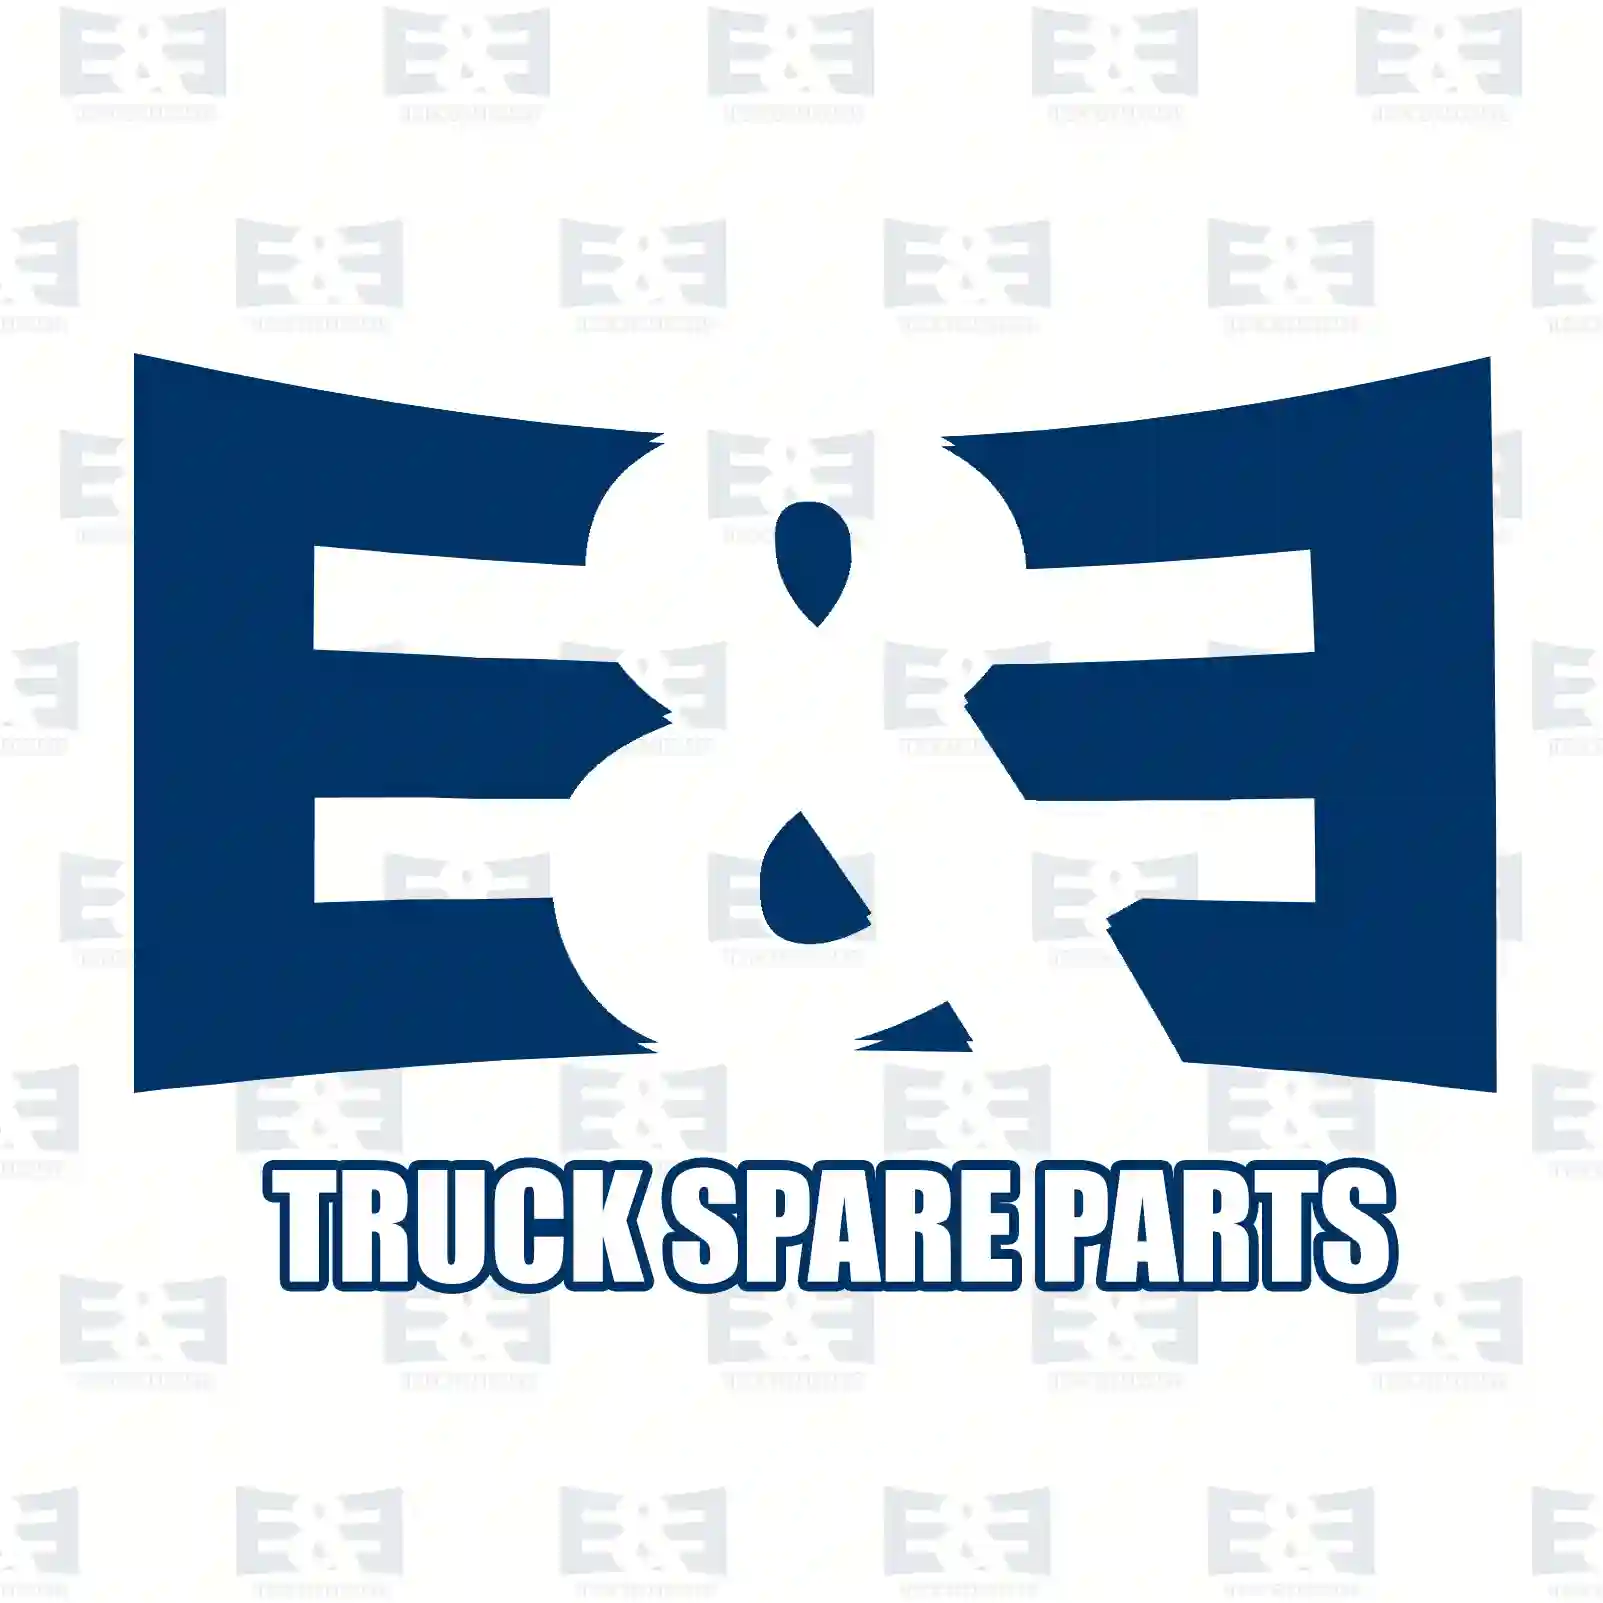 Brake disc, 2E2294252, 7420924727, , , , , , ||  2E2294252 E&E Truck Spare Parts | Truck Spare Parts, Auotomotive Spare Parts Brake disc, 2E2294252, 7420924727, , , , , , ||  2E2294252 E&E Truck Spare Parts | Truck Spare Parts, Auotomotive Spare Parts